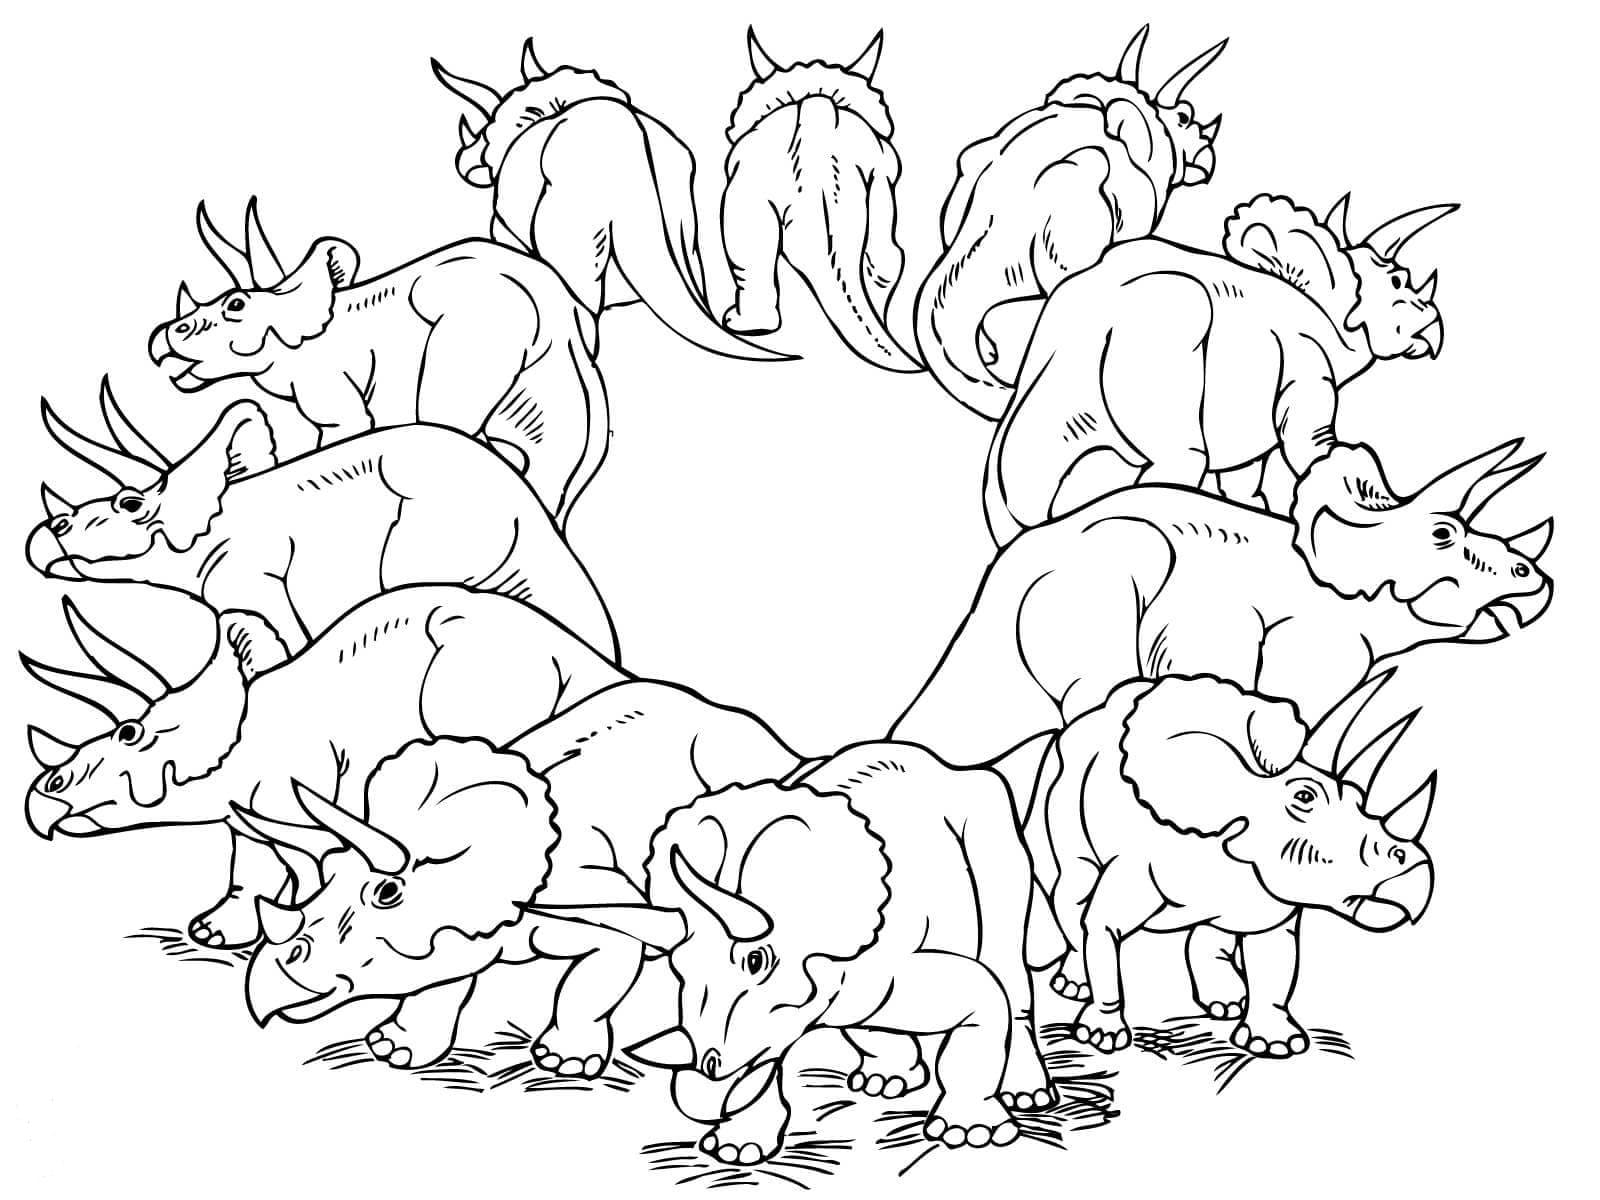 Dibujos de Triceratops para colorear. Descargar o imprimir gratis